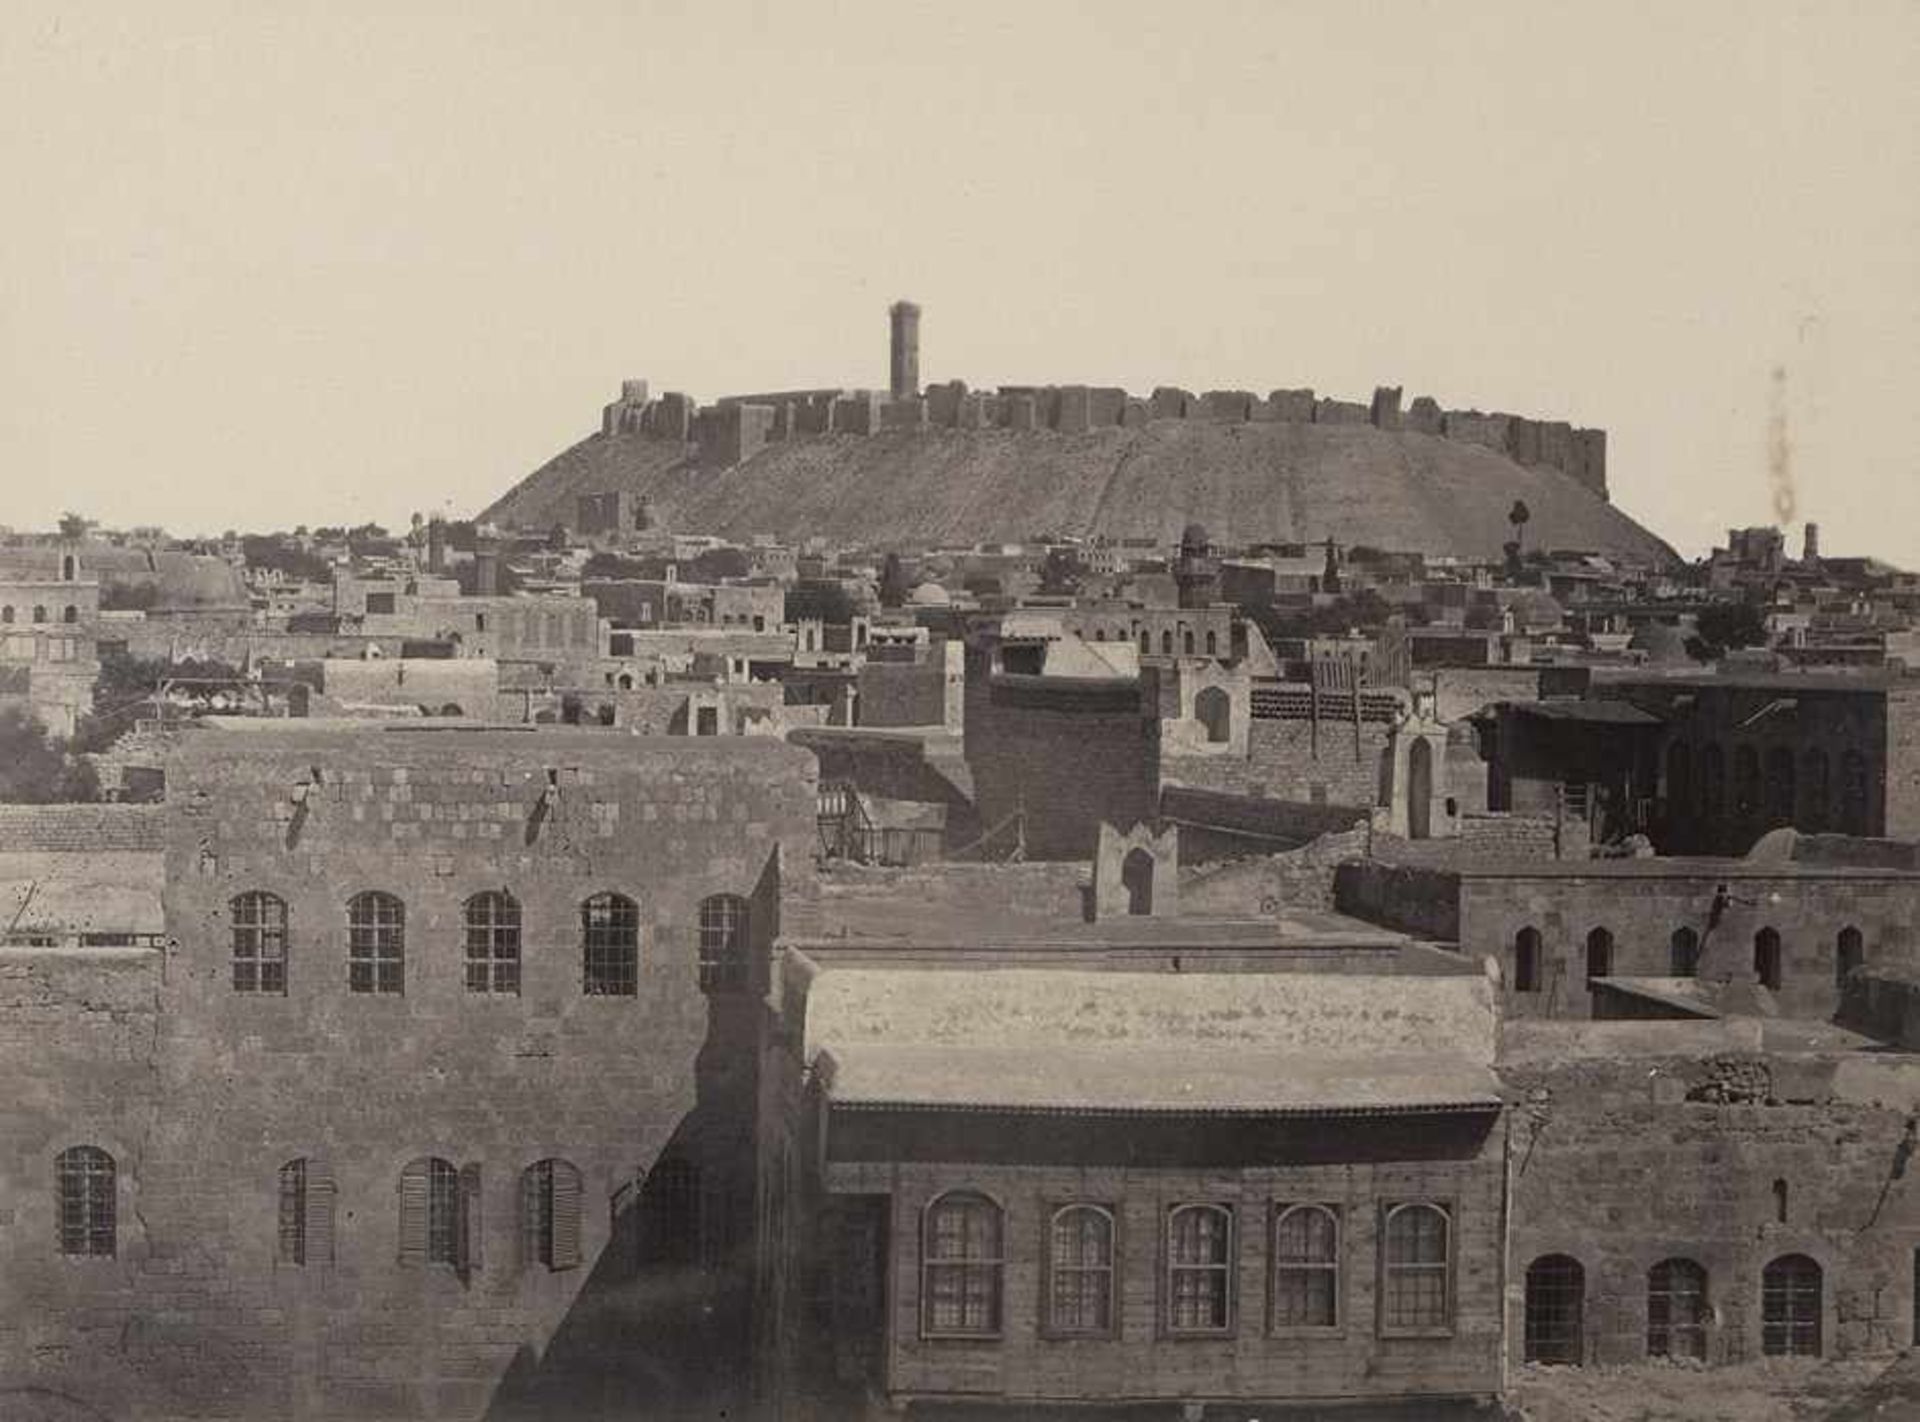 Aleppo: Early views of Aleppo Photographer unknown. Early views of Aleppo. 1870s. 3 albumen